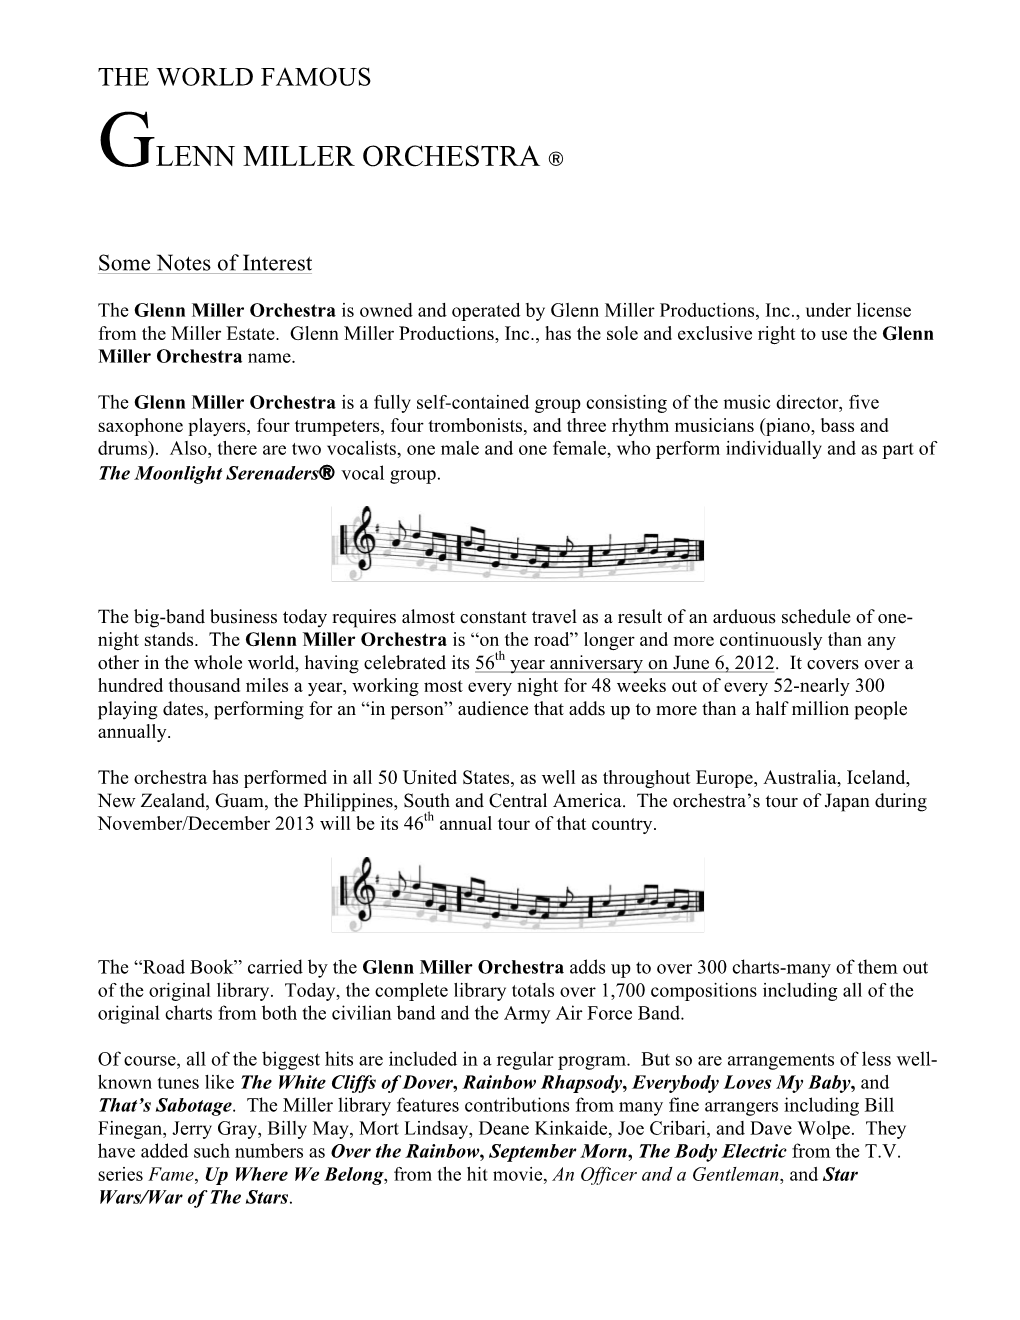 Glenn Miller Orchestra ®